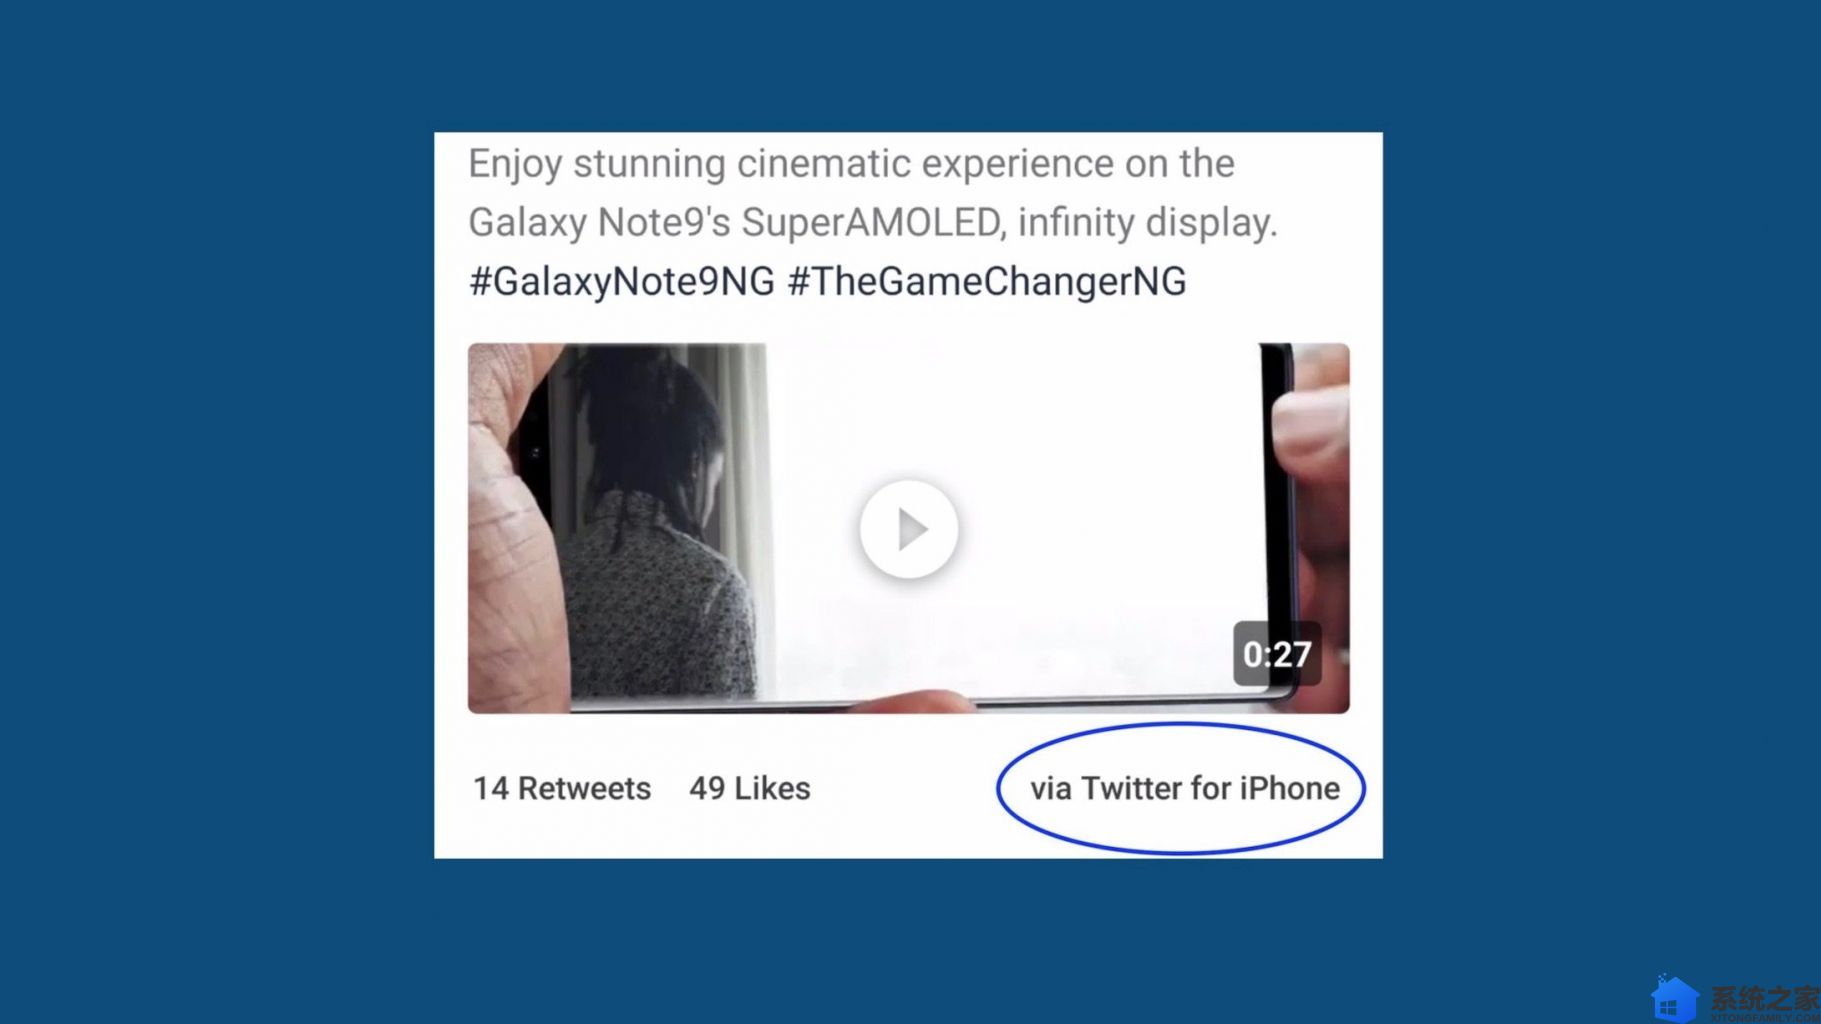 三星使用 iPhone 版推特发布 Galaxy Note 9 宣传广告